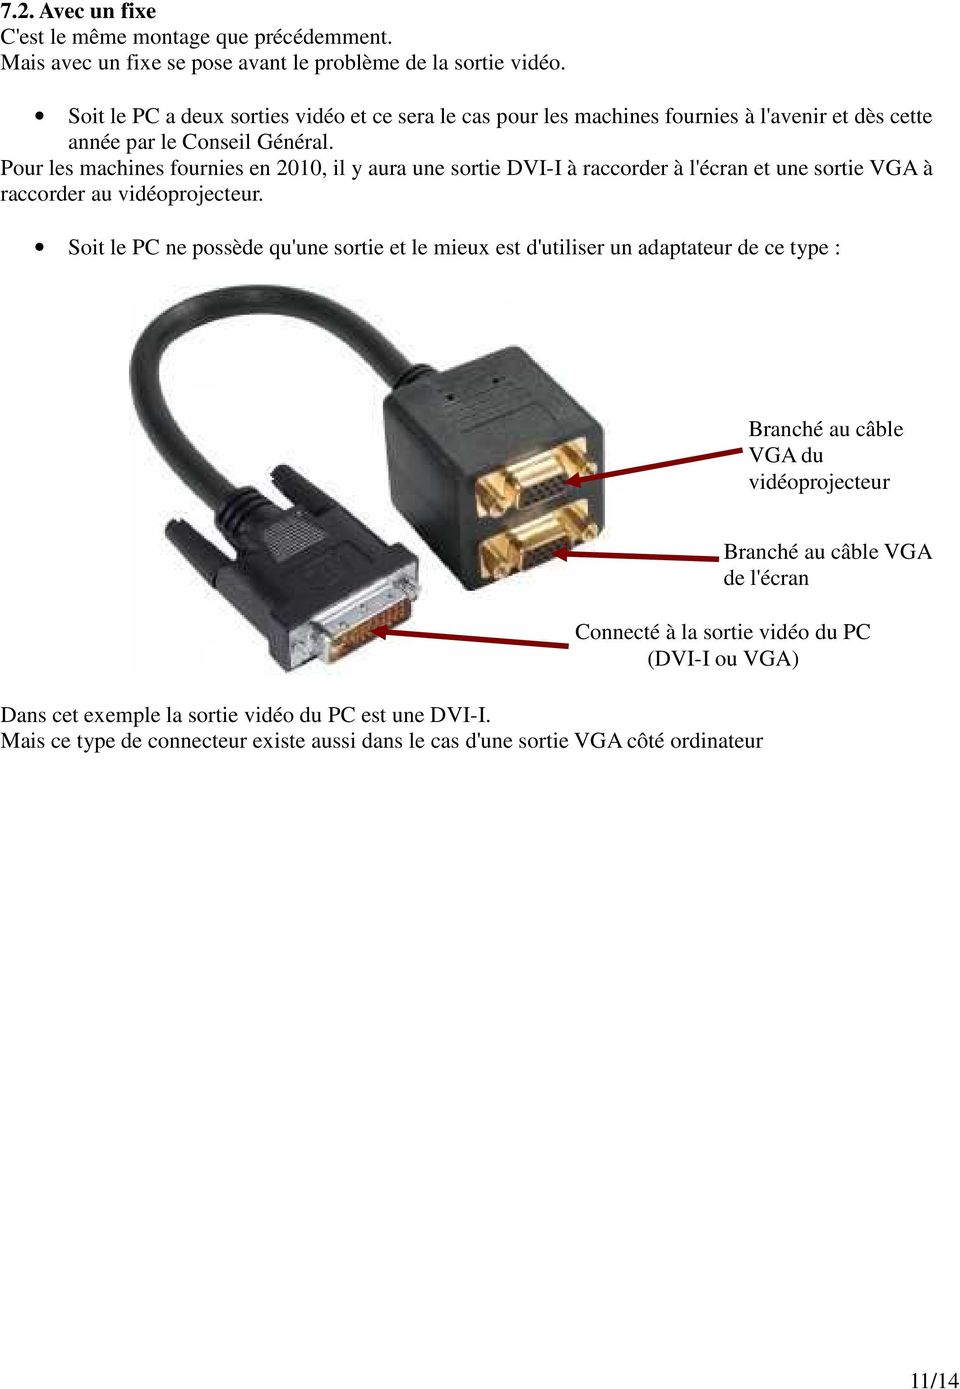 Pour les machines fournies en 2010, il y aura une sortie DVI-I à raccorder à l'écran et une sortie VGA à raccorder au vidéoprojecteur.